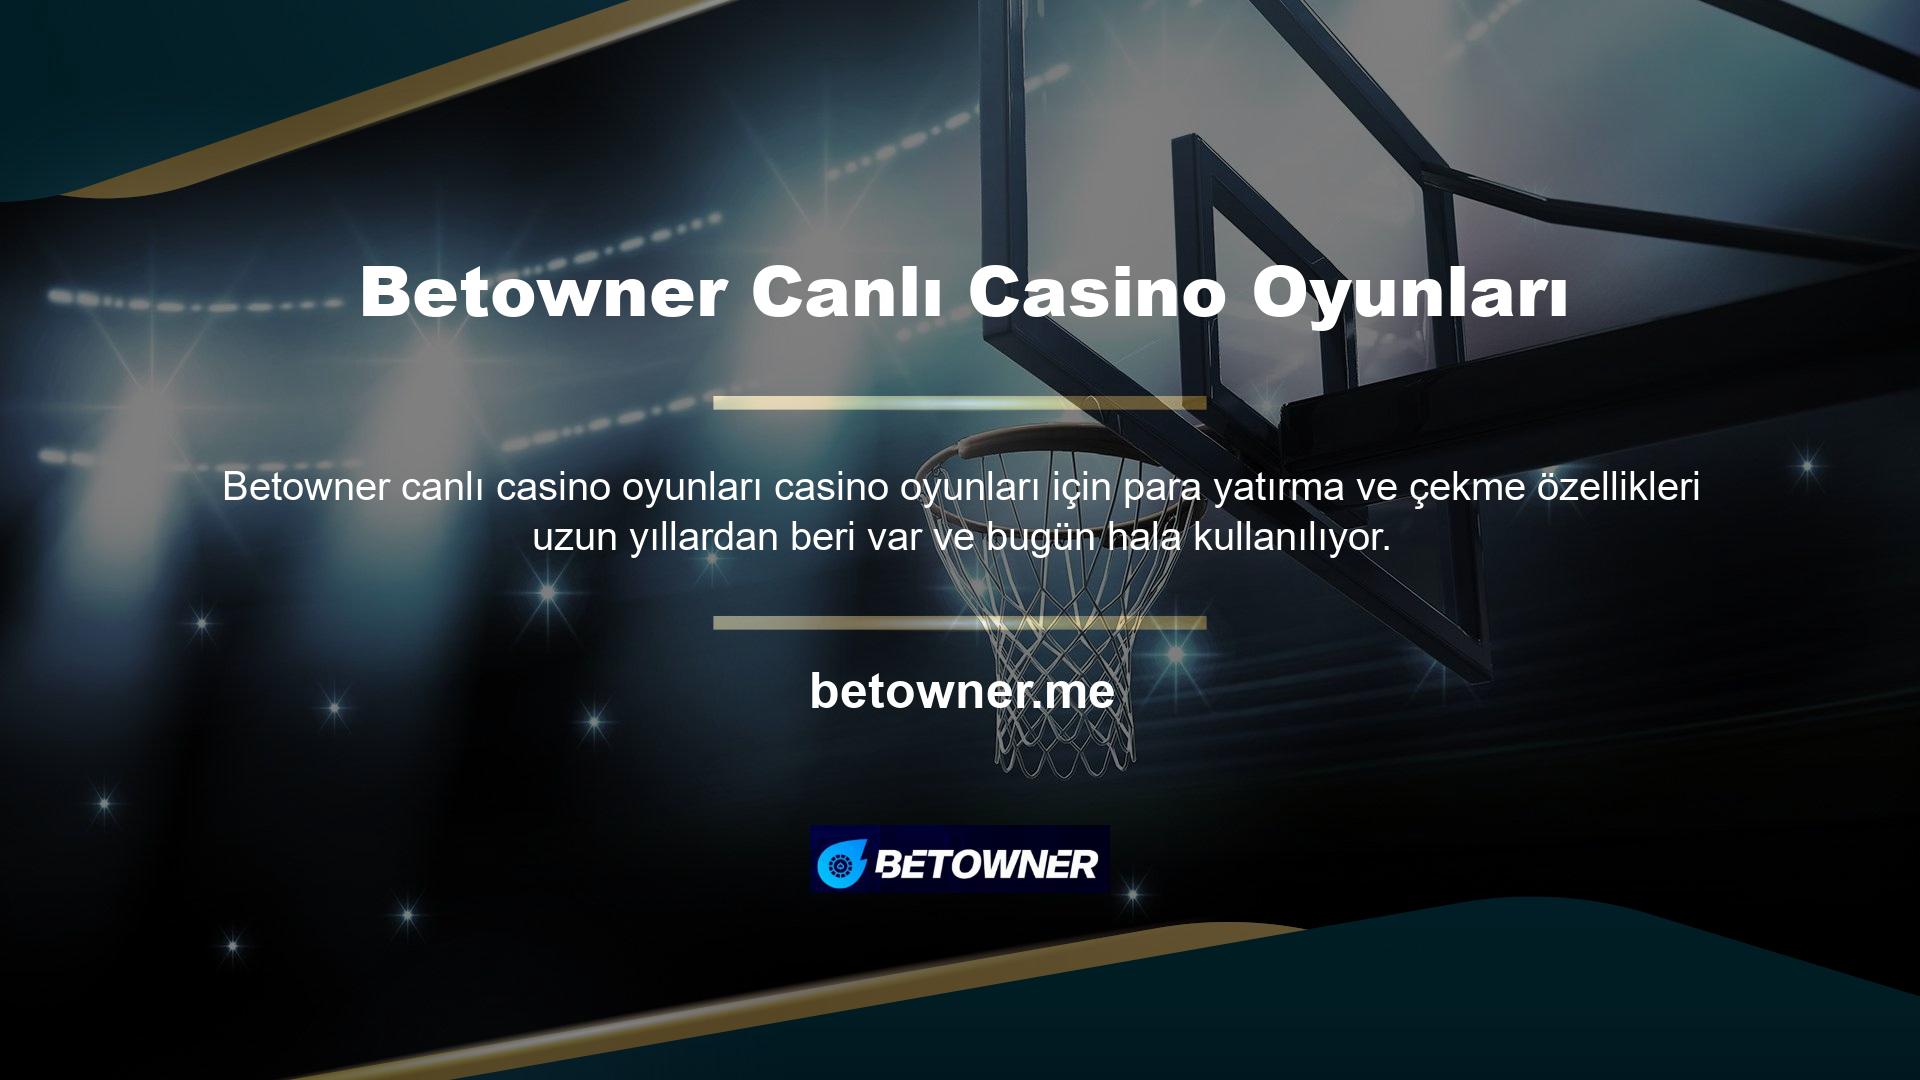 Birçok kişi casinoya gidip eğlenmek yerine Betowner Canlı Casino Oyunlarında canlı casino oyunları oynamayı deniyor